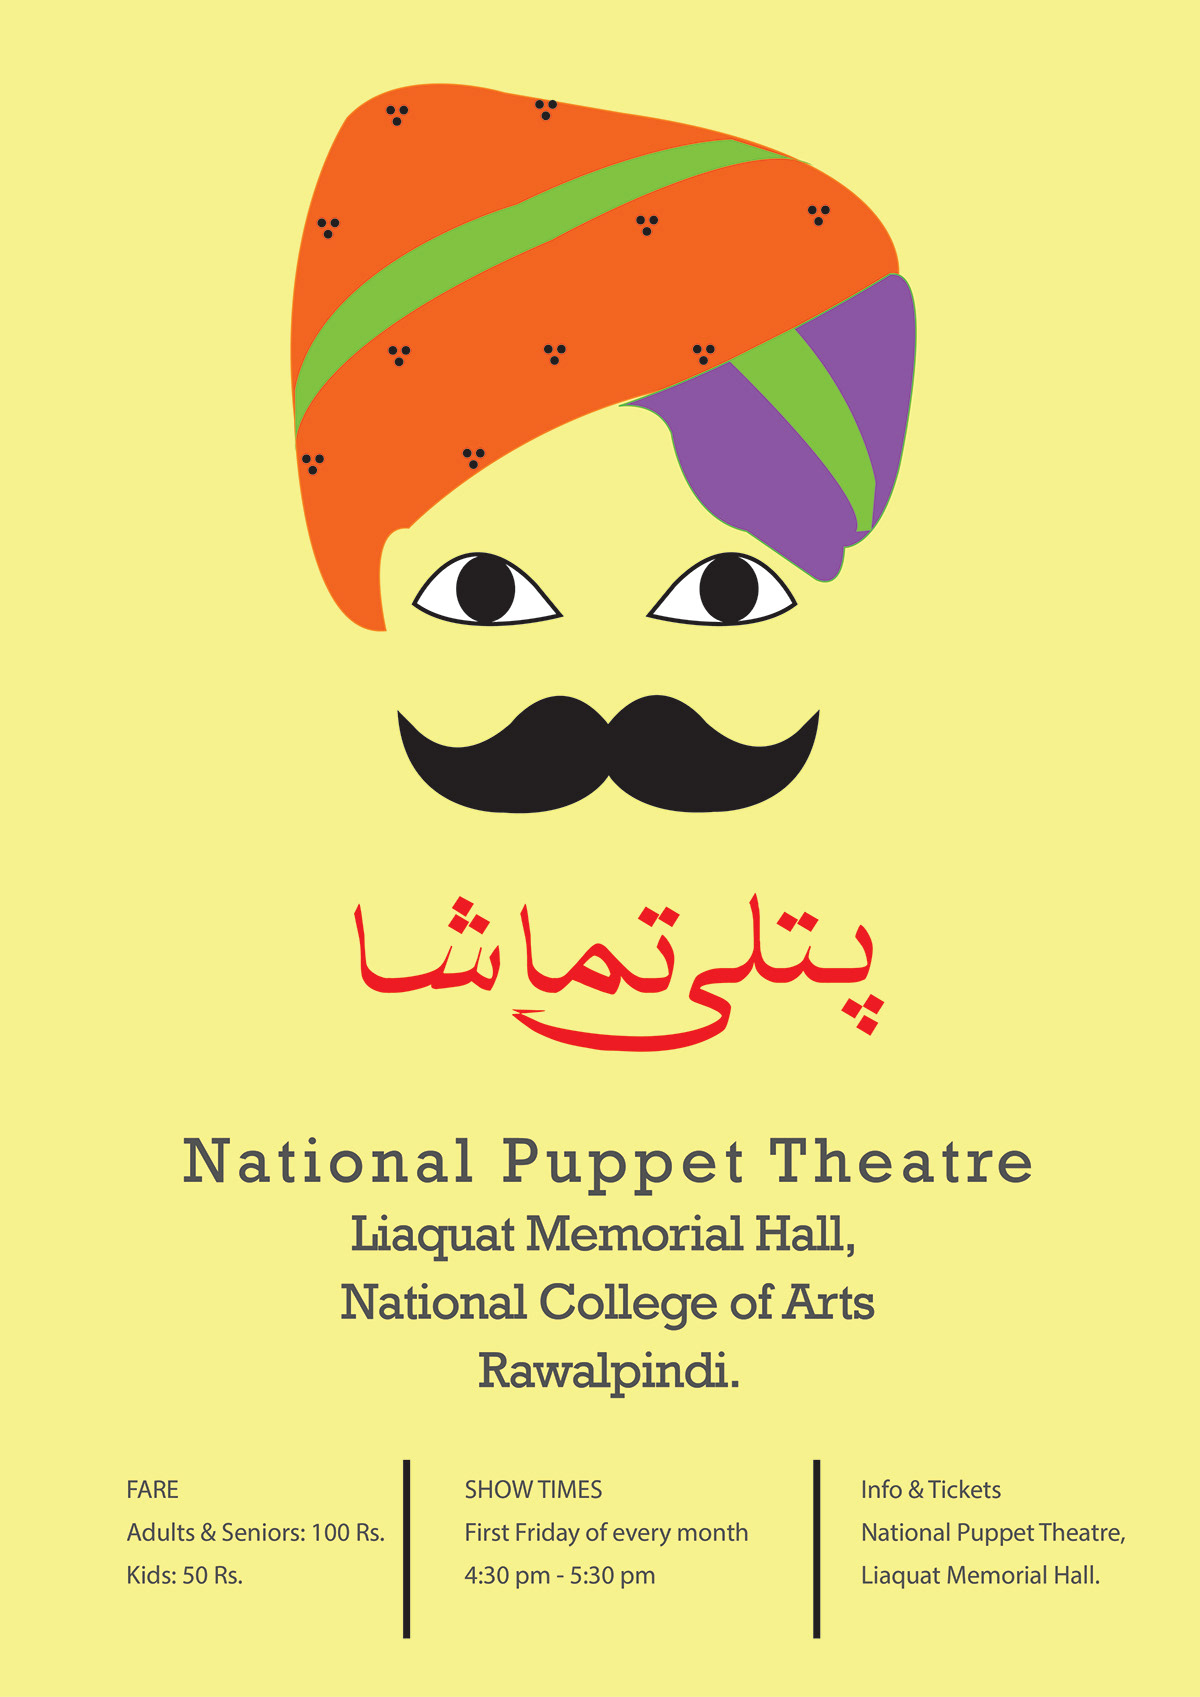 puppetry ILLUSTRATION  logo branding  cultural puppets digital illustration